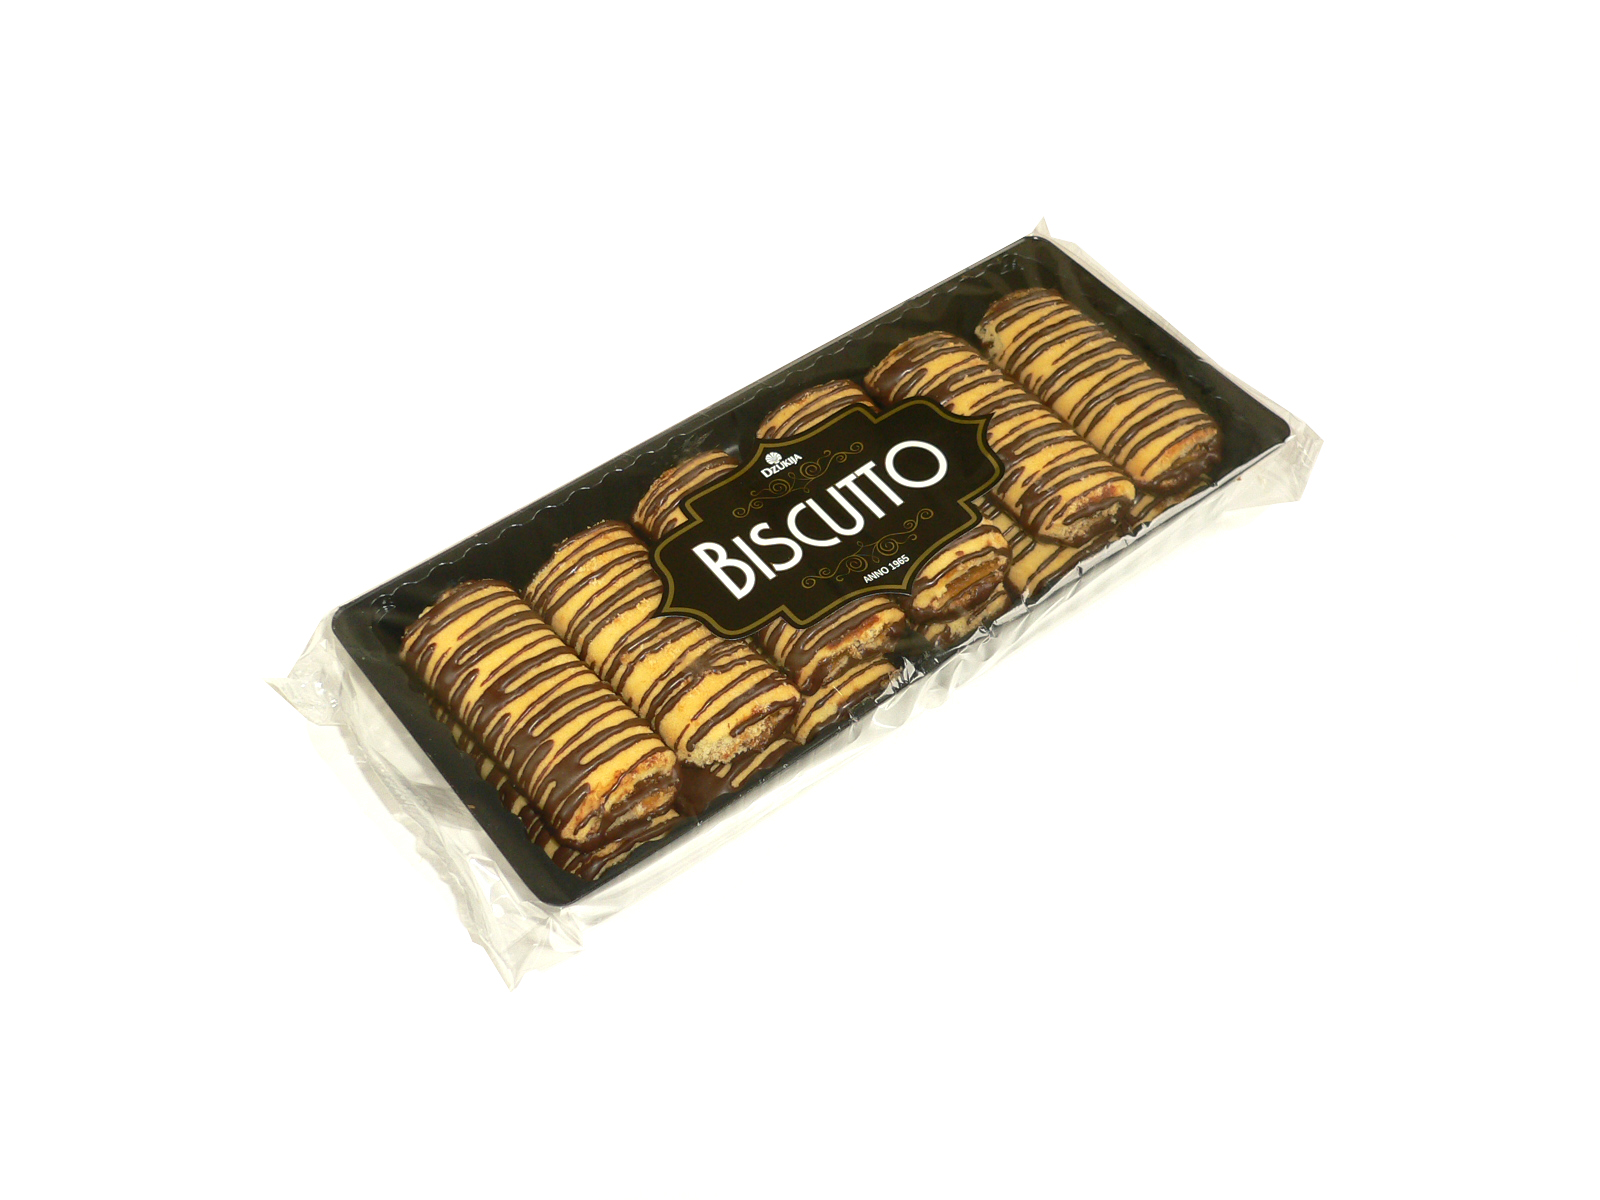 Biscuits “GUBOJA” (Biscutto) 250g.